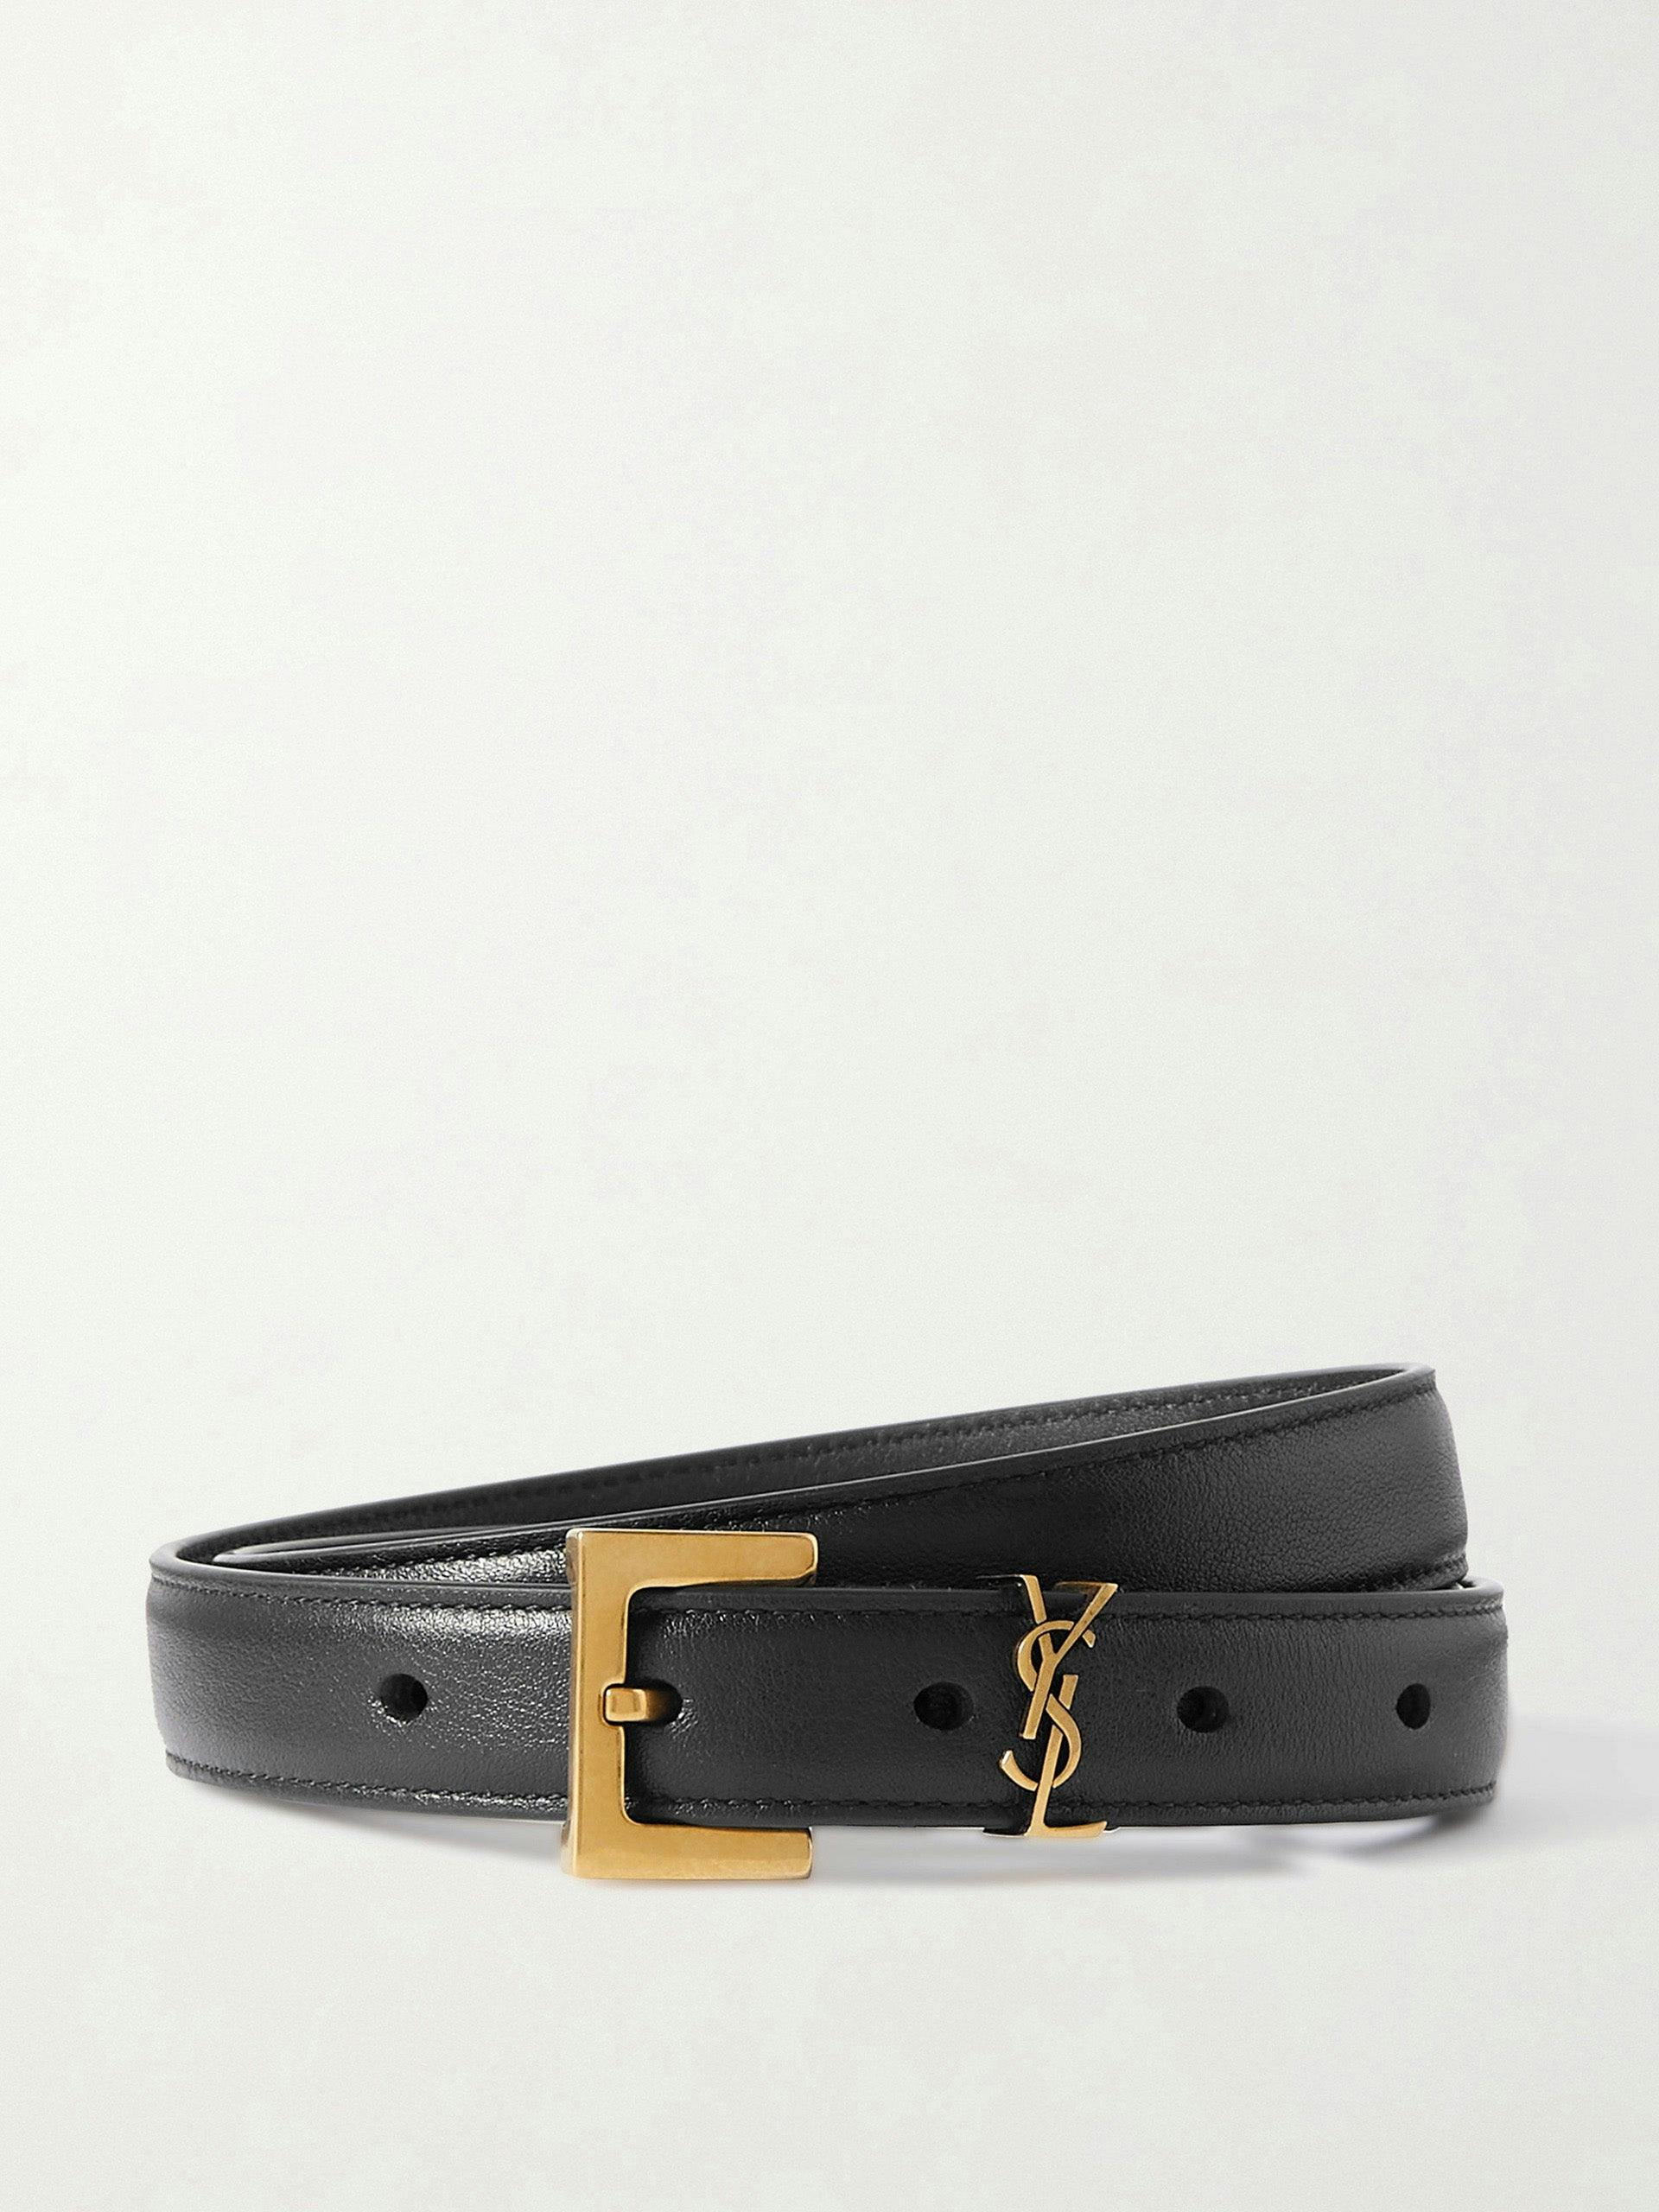 Black monogrammed leather belt